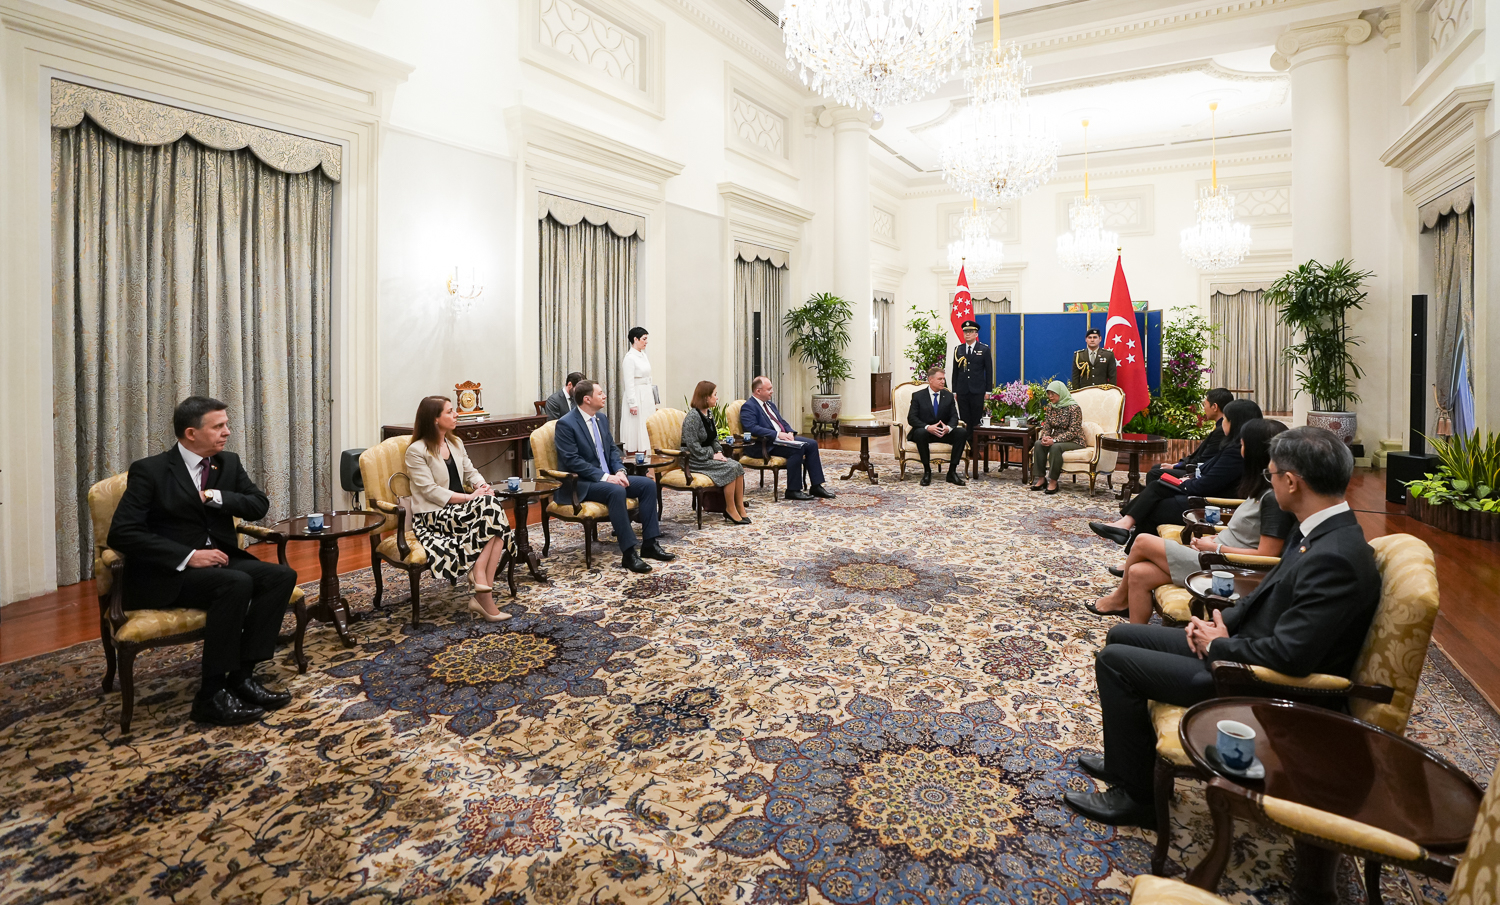 Klaus Iohannis a început vizita de stat în Singapore. A fost primit de președintele Halimah Yacob | GALERIE FOTO - Imaginea 4